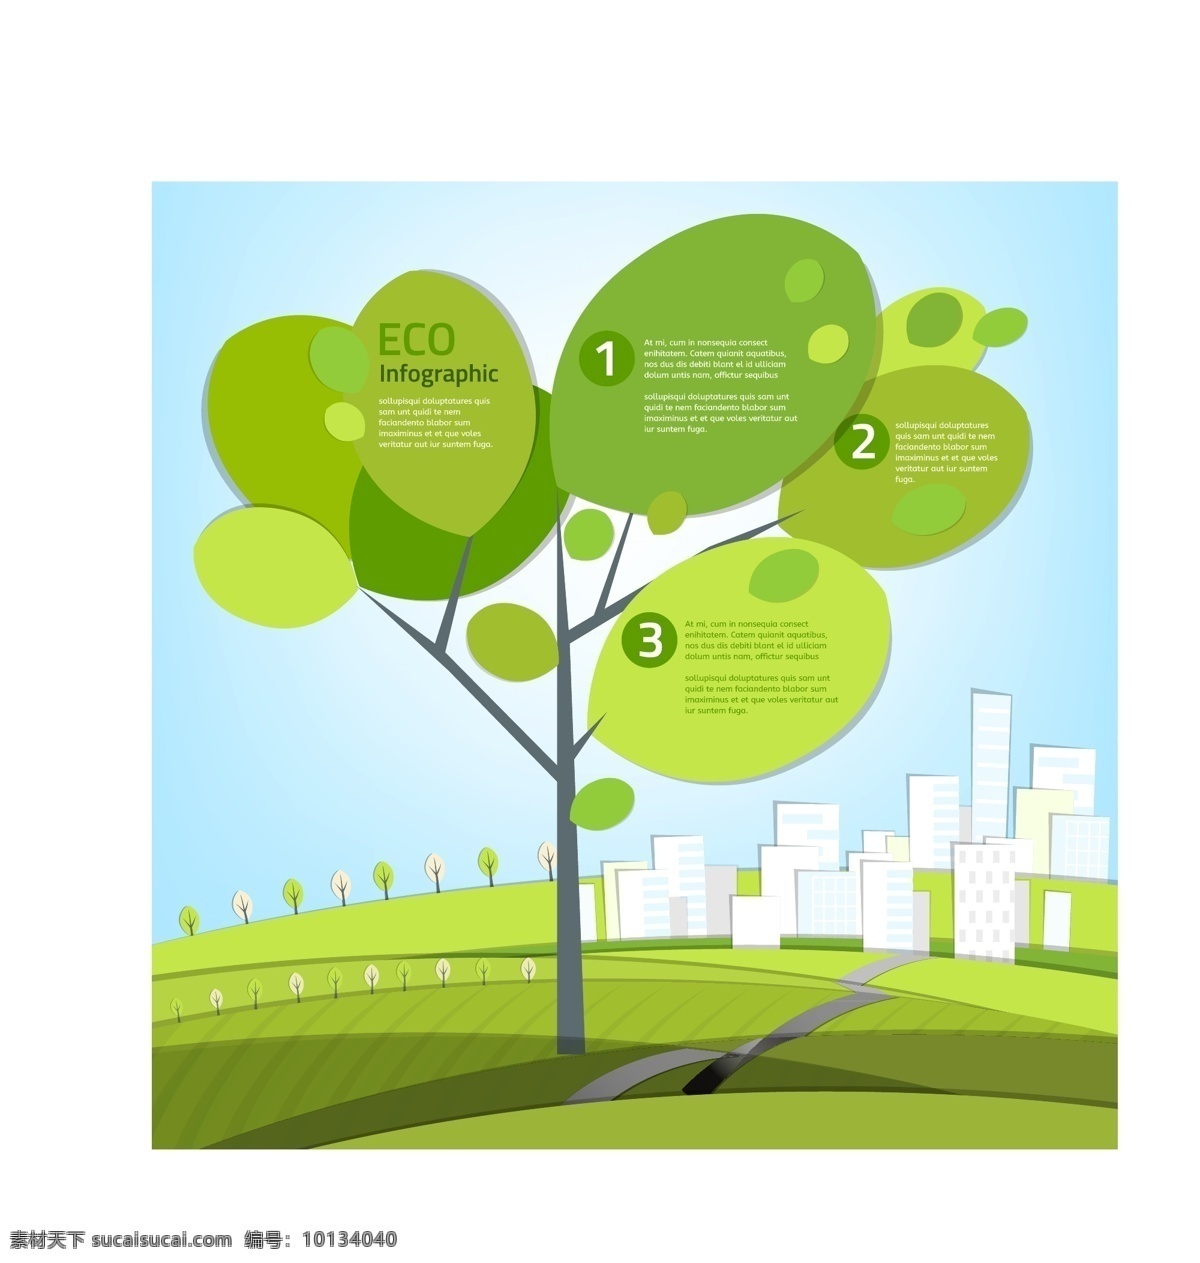 卡通大树矢量 商务金融 质感 信息图表 大树 卡通树 树叶 茂盛 小树苗 绿叶 树木 矢量图片